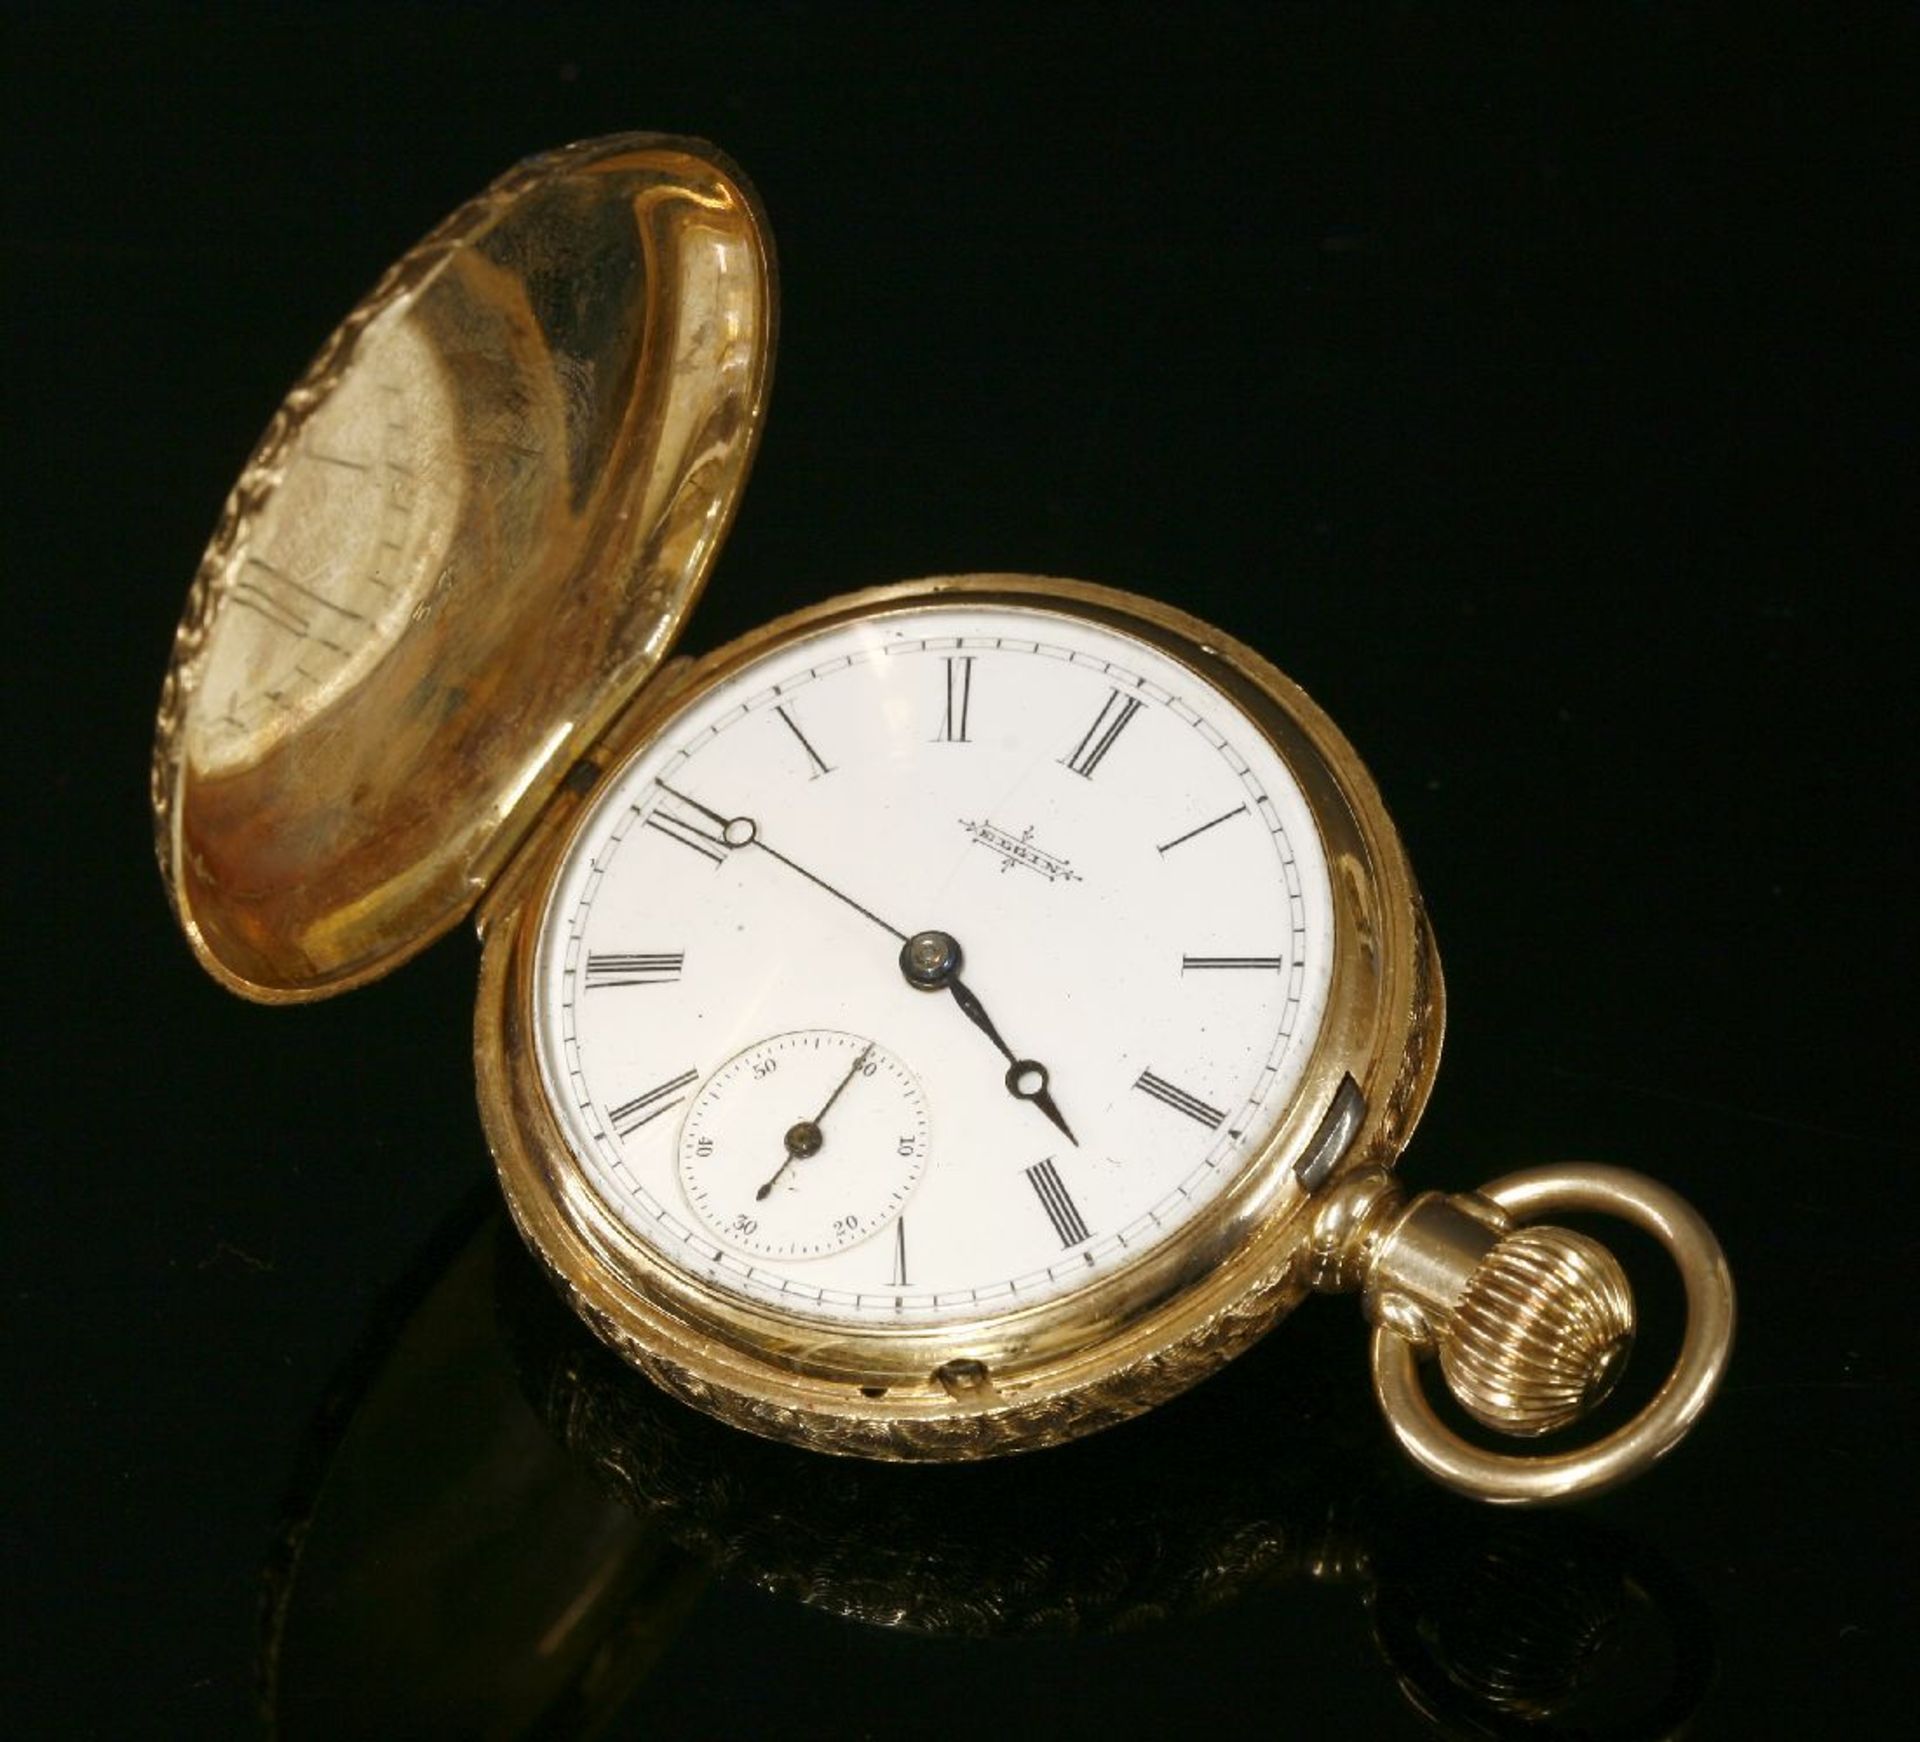 An American, Elgin mechanical side wind four colour gold hunter pocket watch, 39mm diameter, an